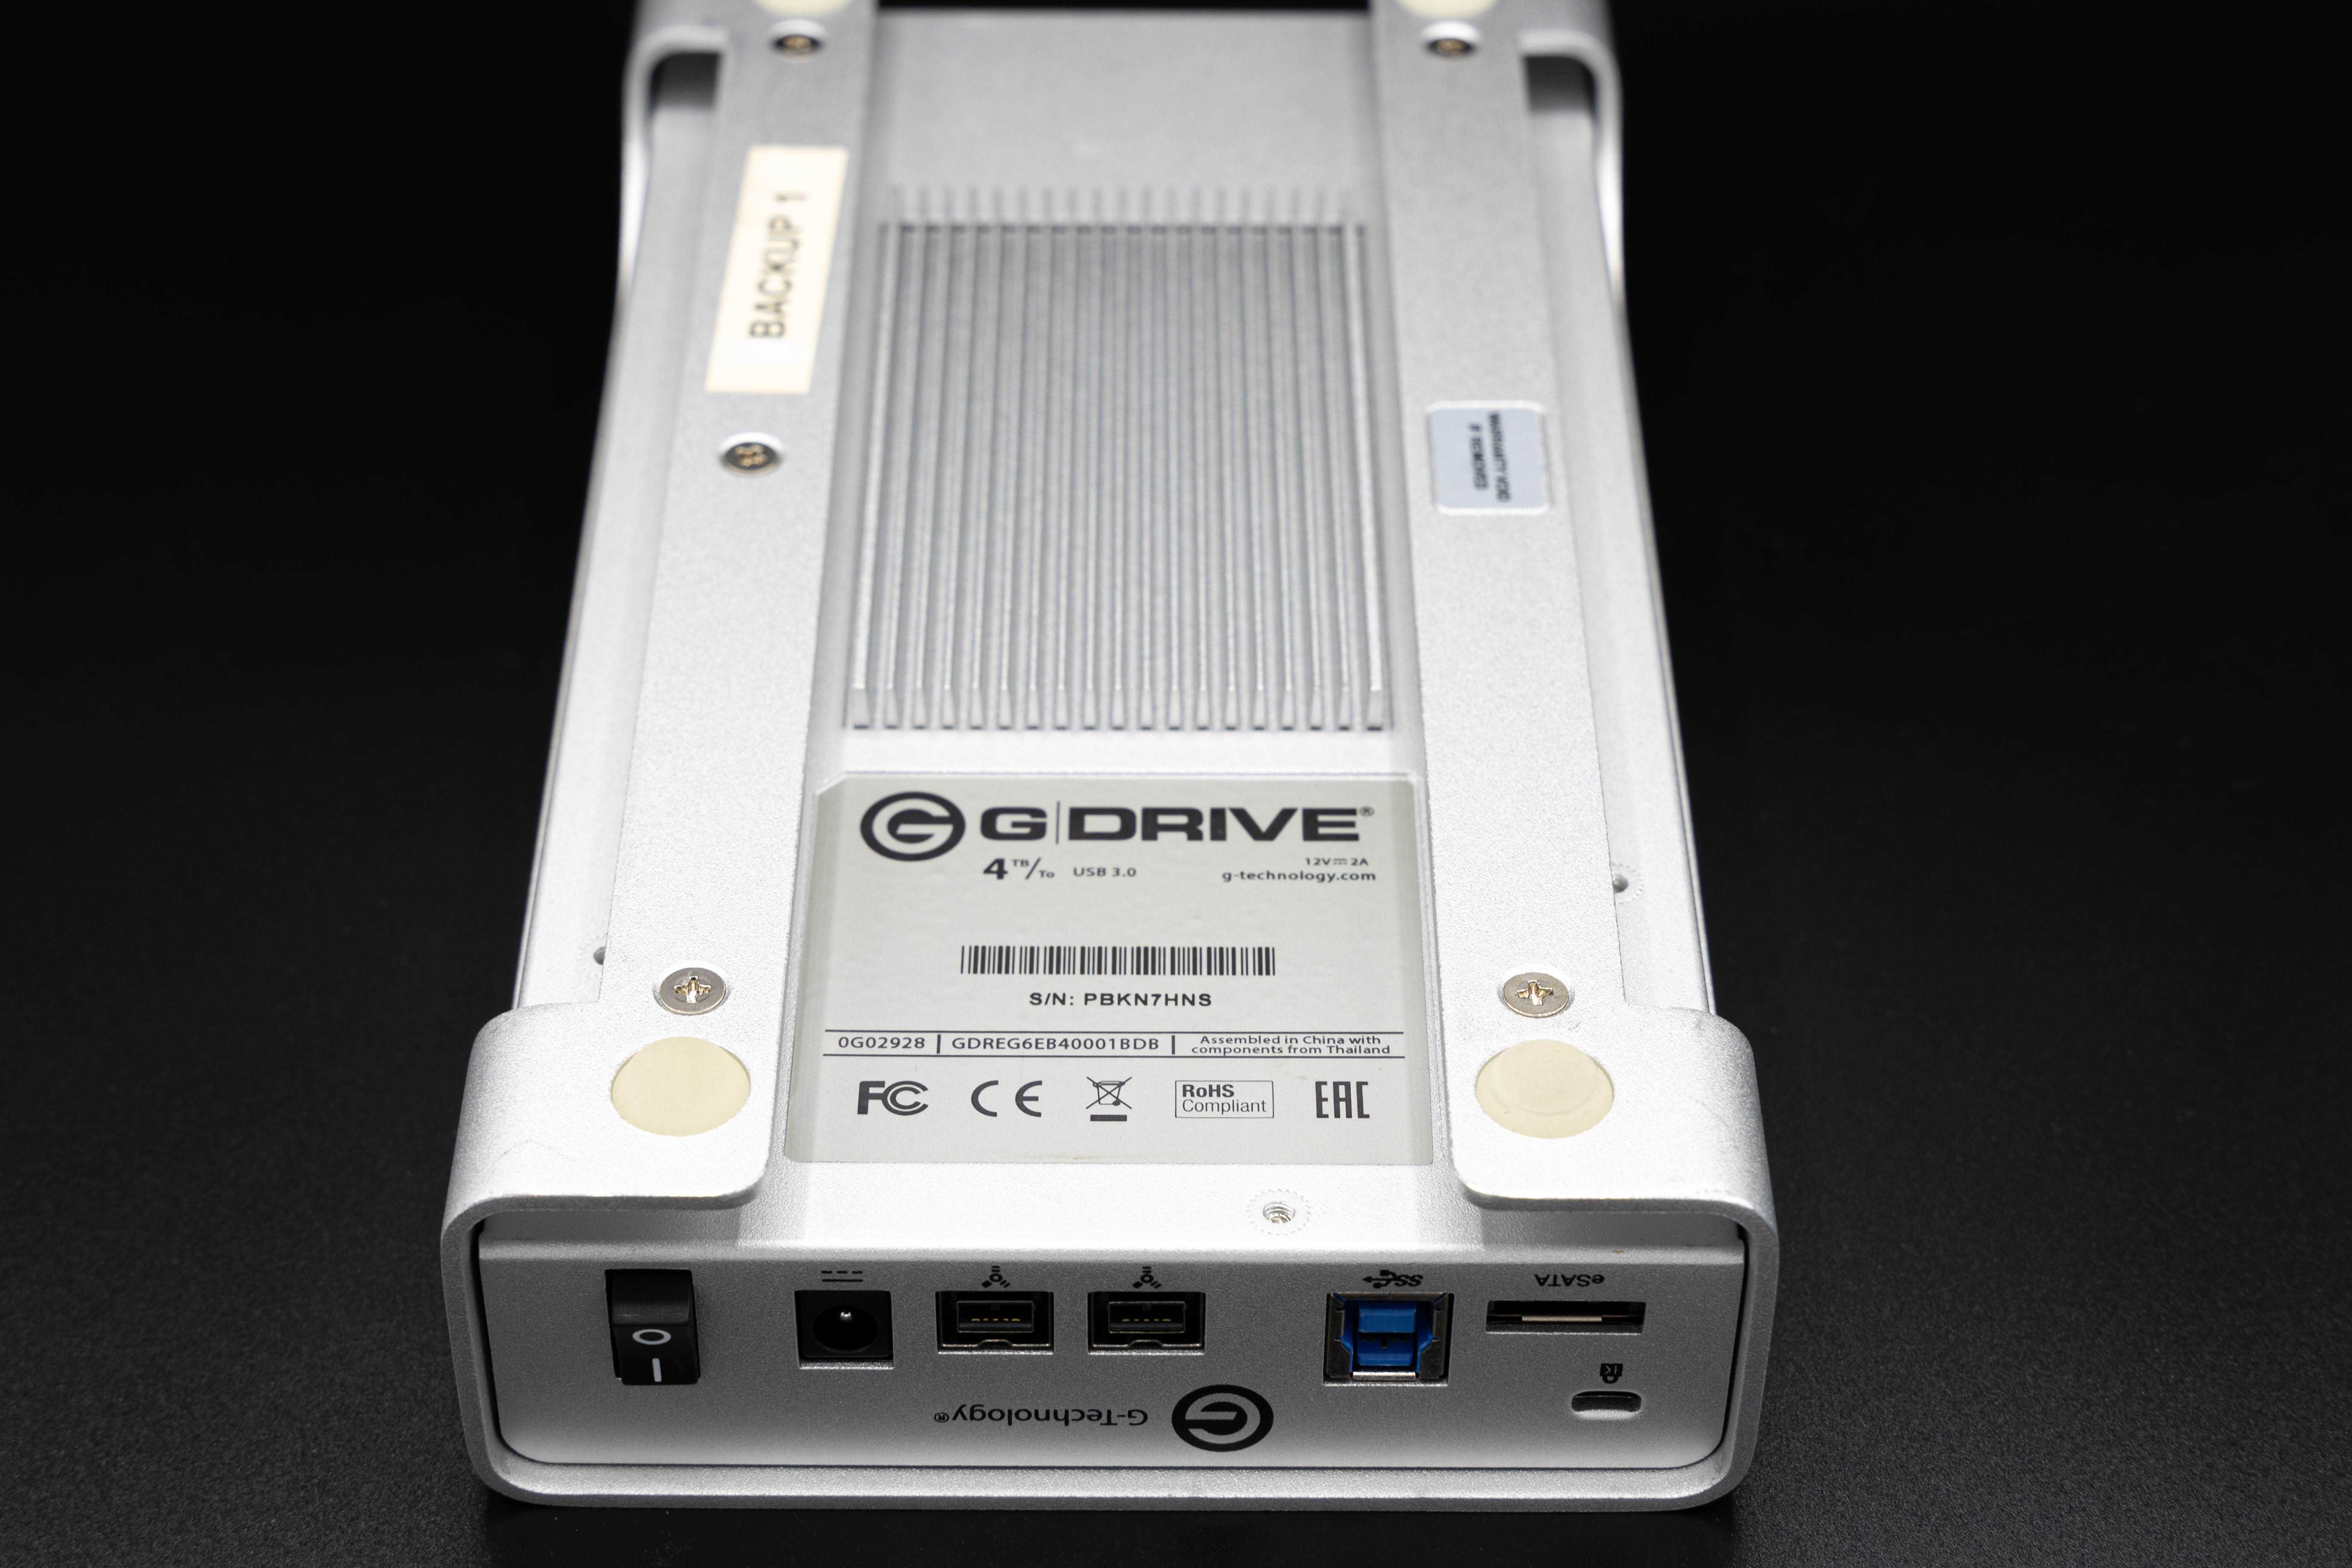 Hard drive G DRIVE (4tb)